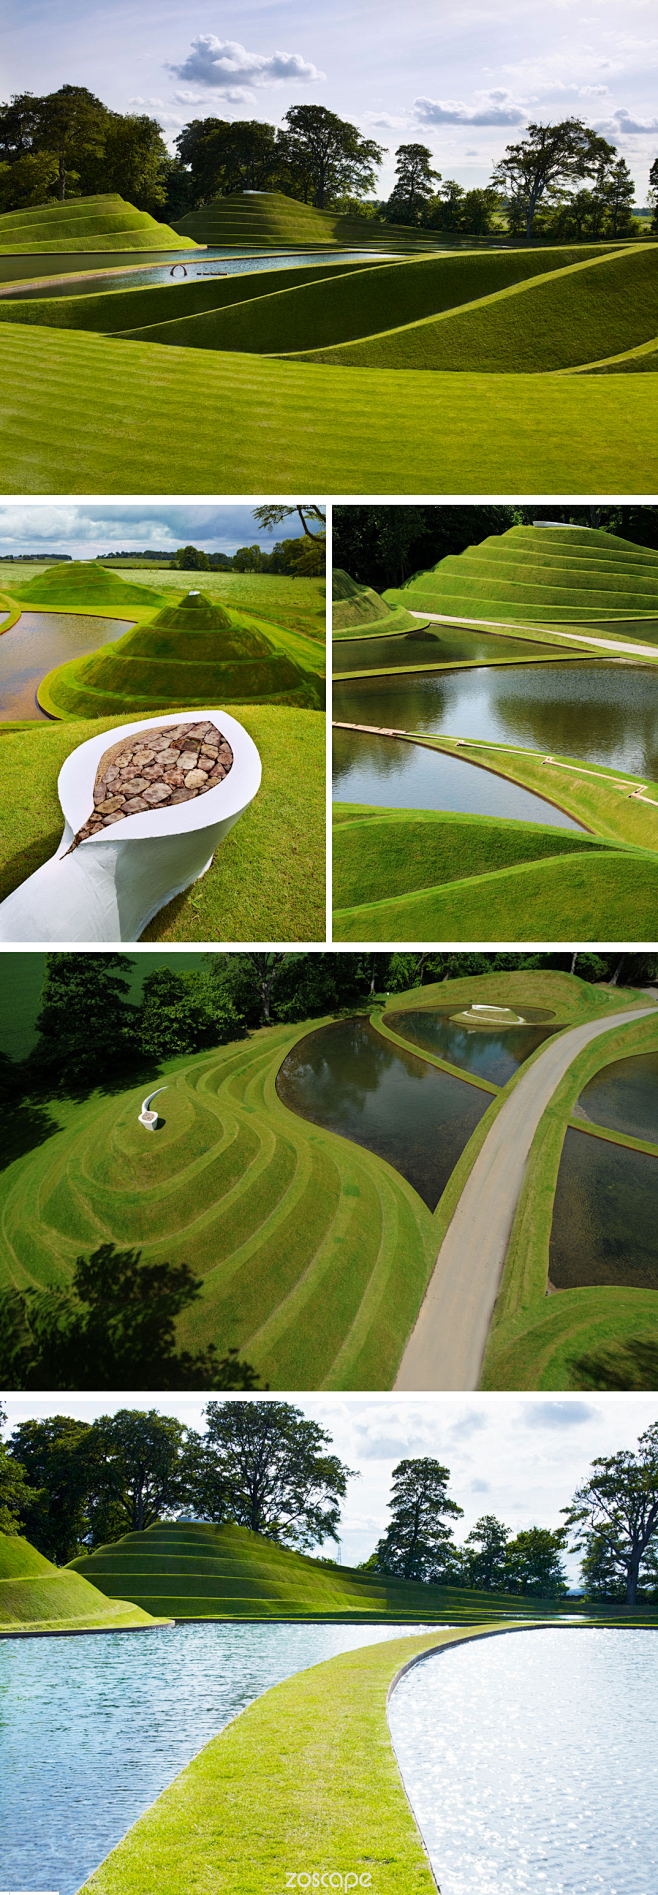 草坪zoscape草坪景观设计微地形设计景观意向图创意景观设计